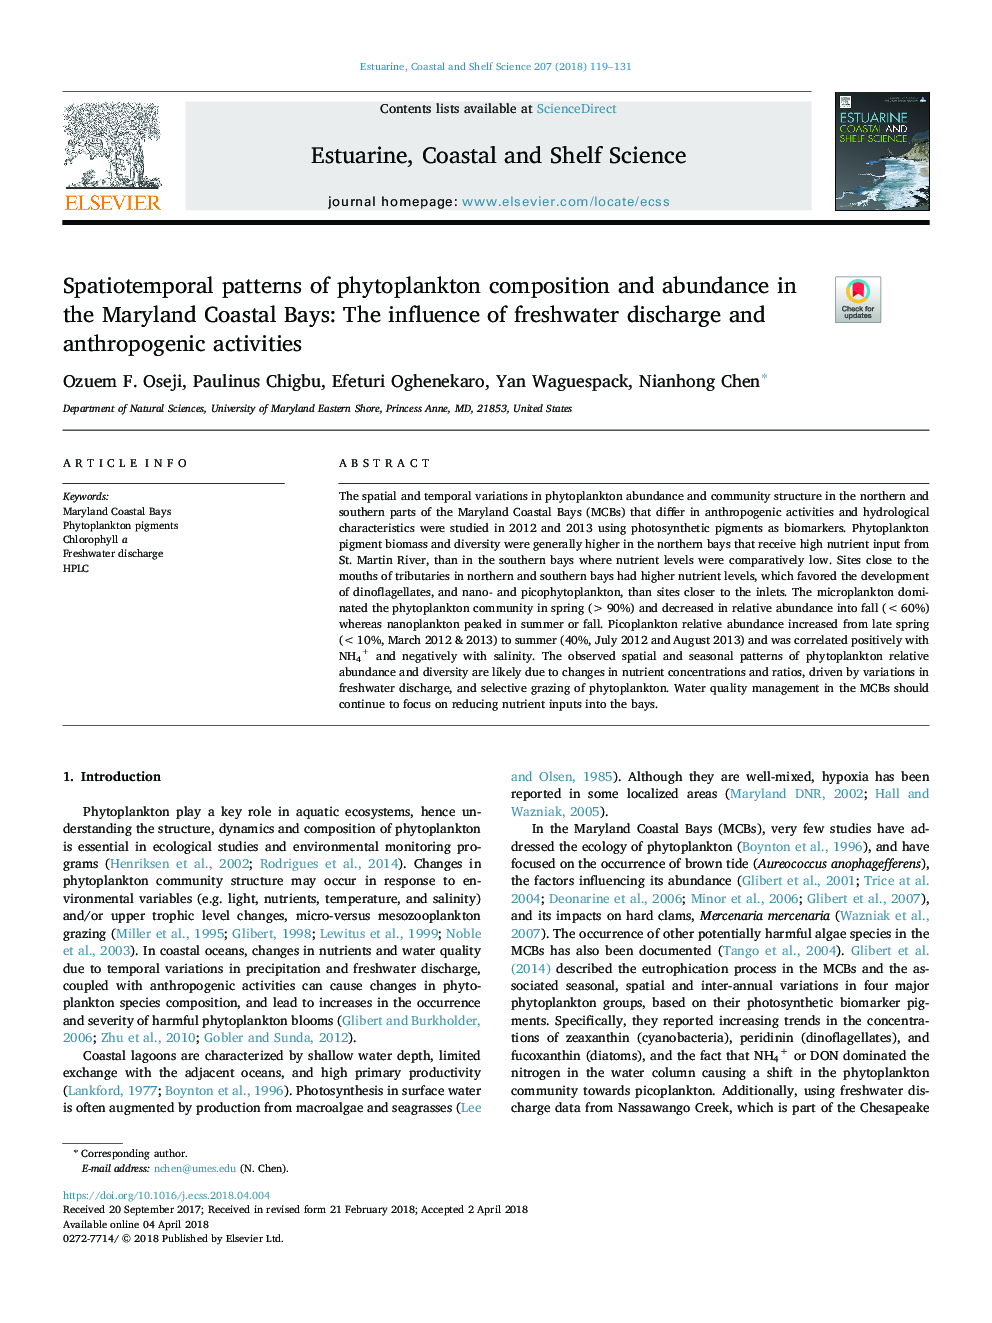 الگوهای اسپکتیومیومی ترکیب و فراوانی فیتوپلانکتون در خلیج ساحلی مریلند: تأثیر تخریب آب شیرین و فعالیت های انسان 